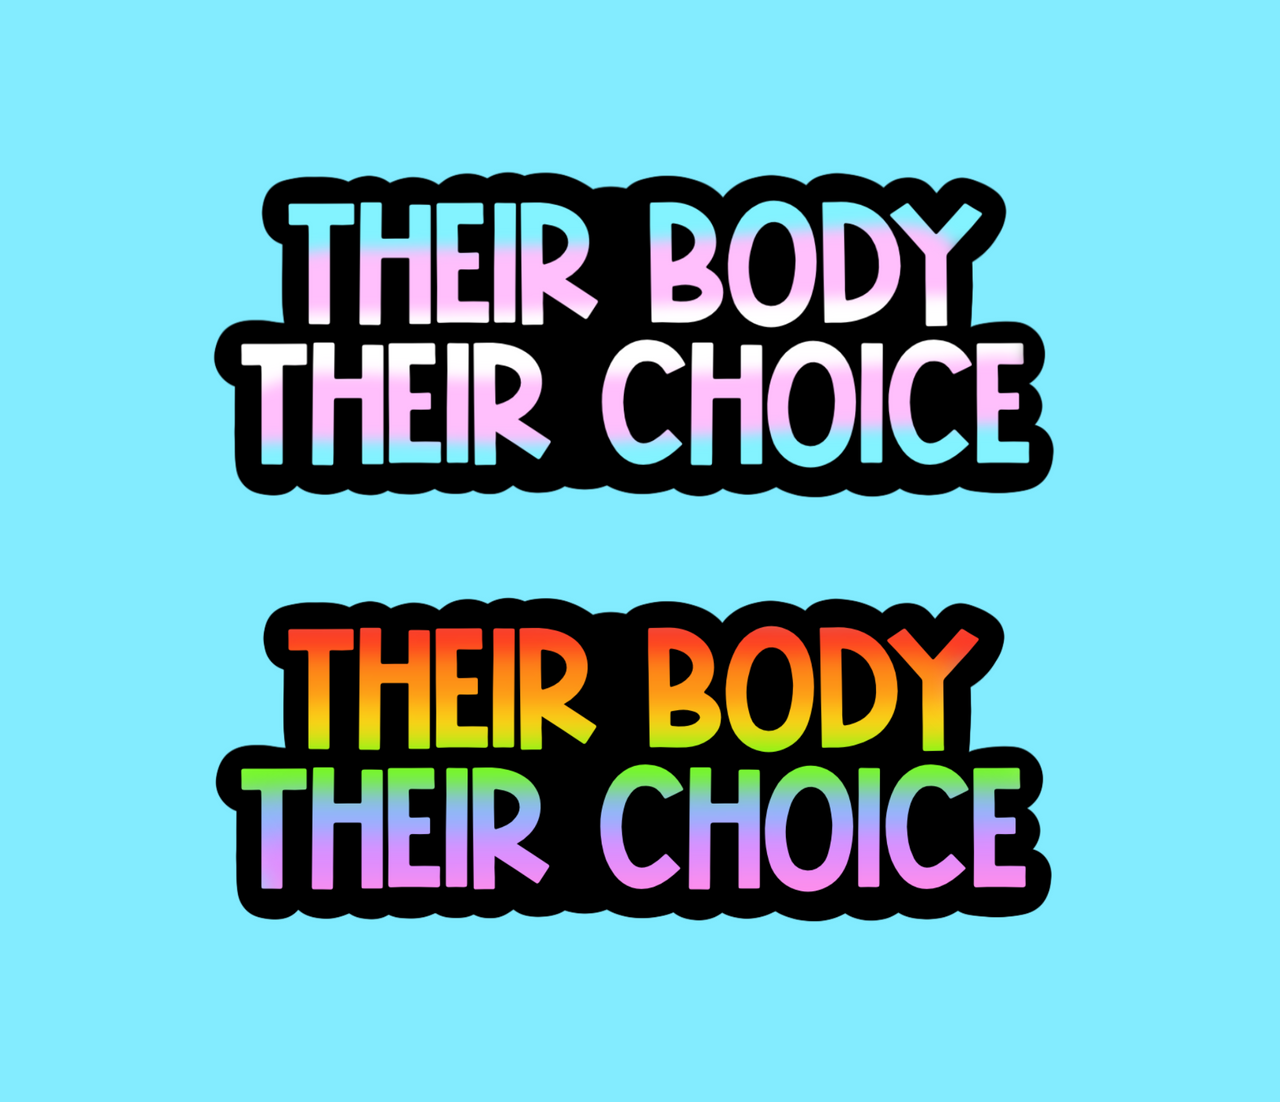 Their body their choice stickers